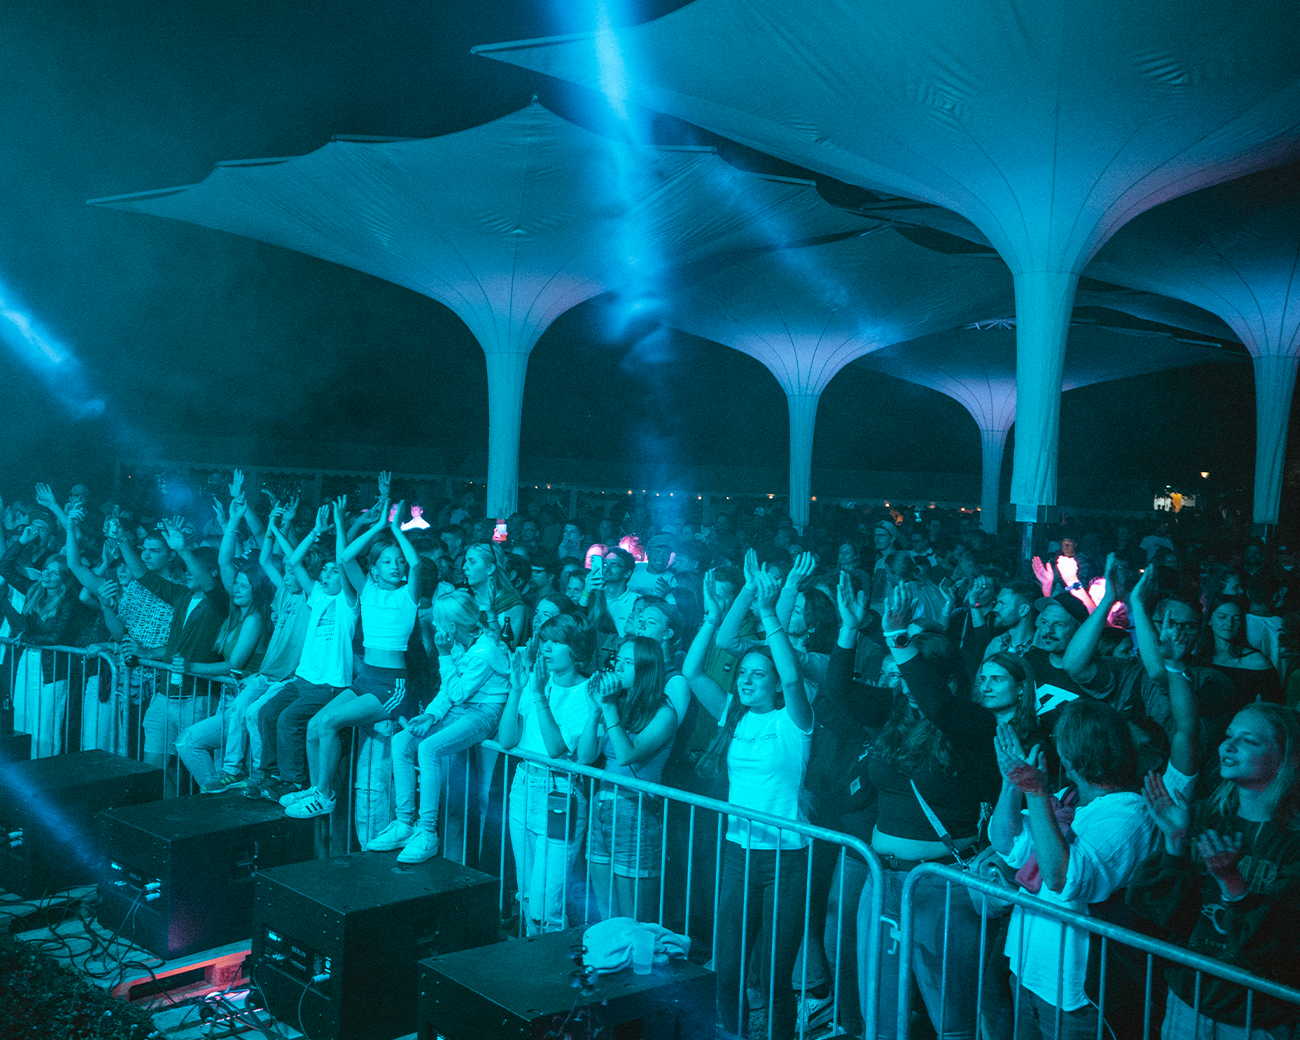 Menschenmenge unter Schirmen blau angeleuchtet von Bühnenlicht